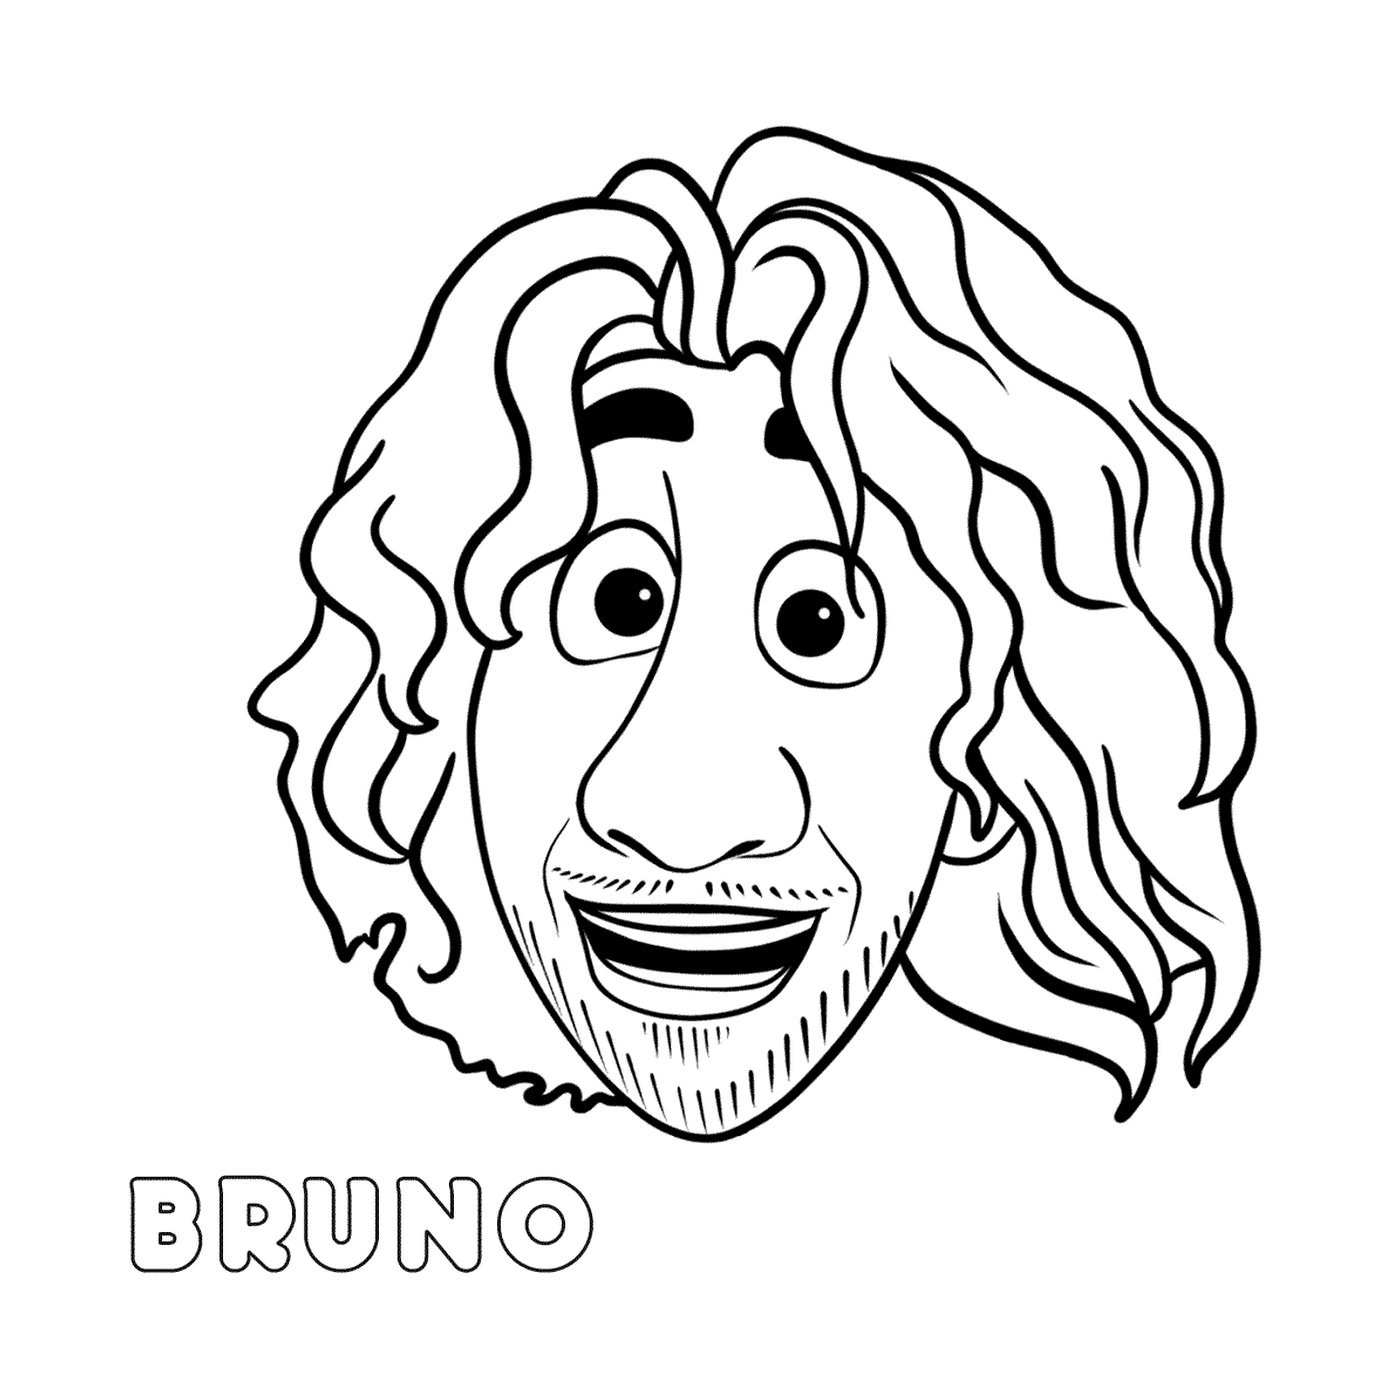  Brunos Gesicht mit langen Haaren 